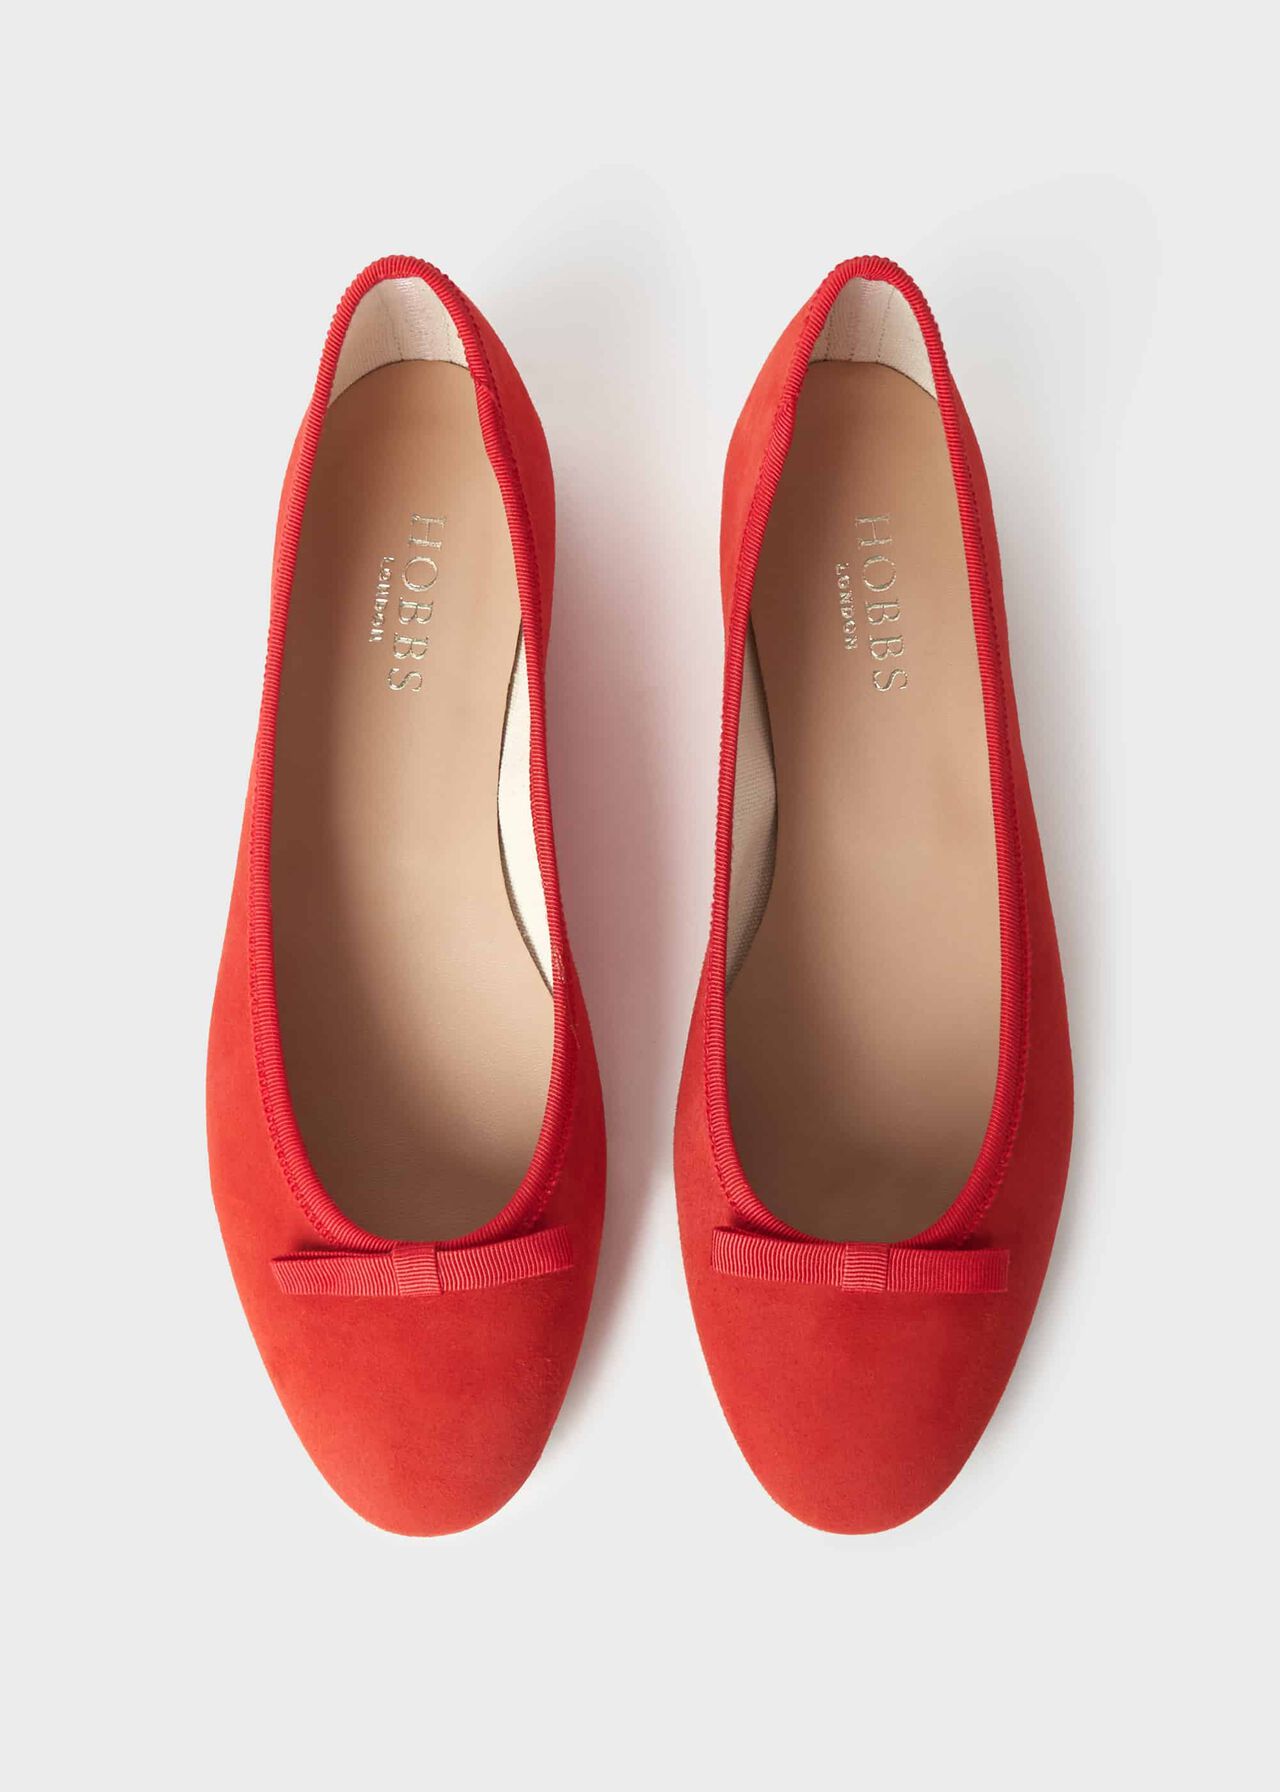 Flo Ballet Flats, Orange Red, hi-res